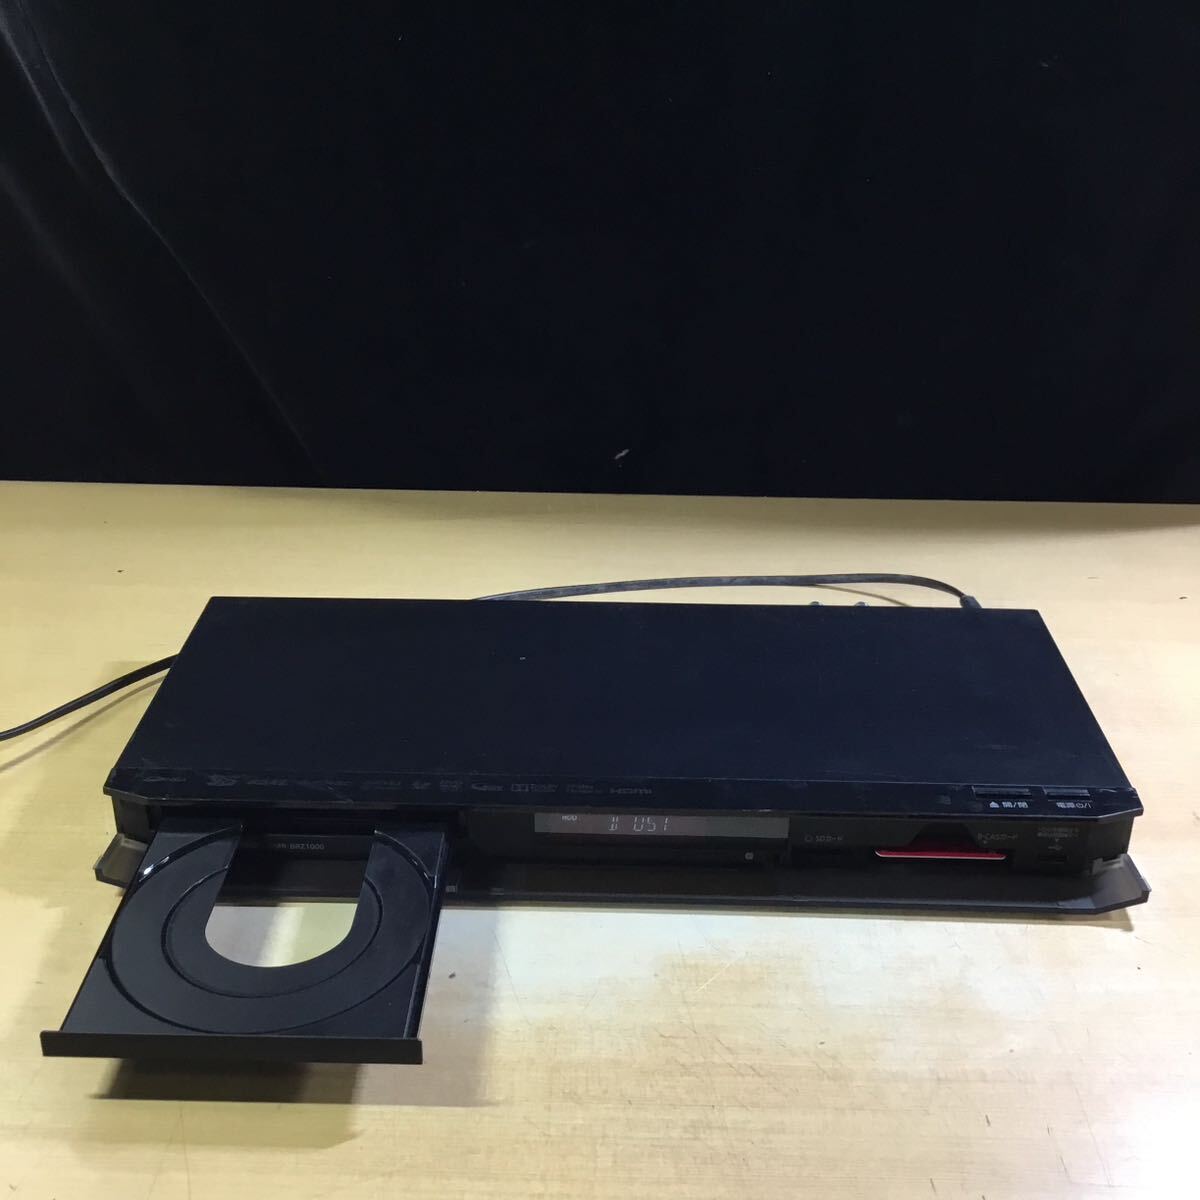 [ бесплатная доставка ](050960F) 2014 год производства Panasonic DMR-BRZ1000 Blue-ray диск магнитофон BD/DVD воспроизведение рабочее состояние подтверждено б/у товар 